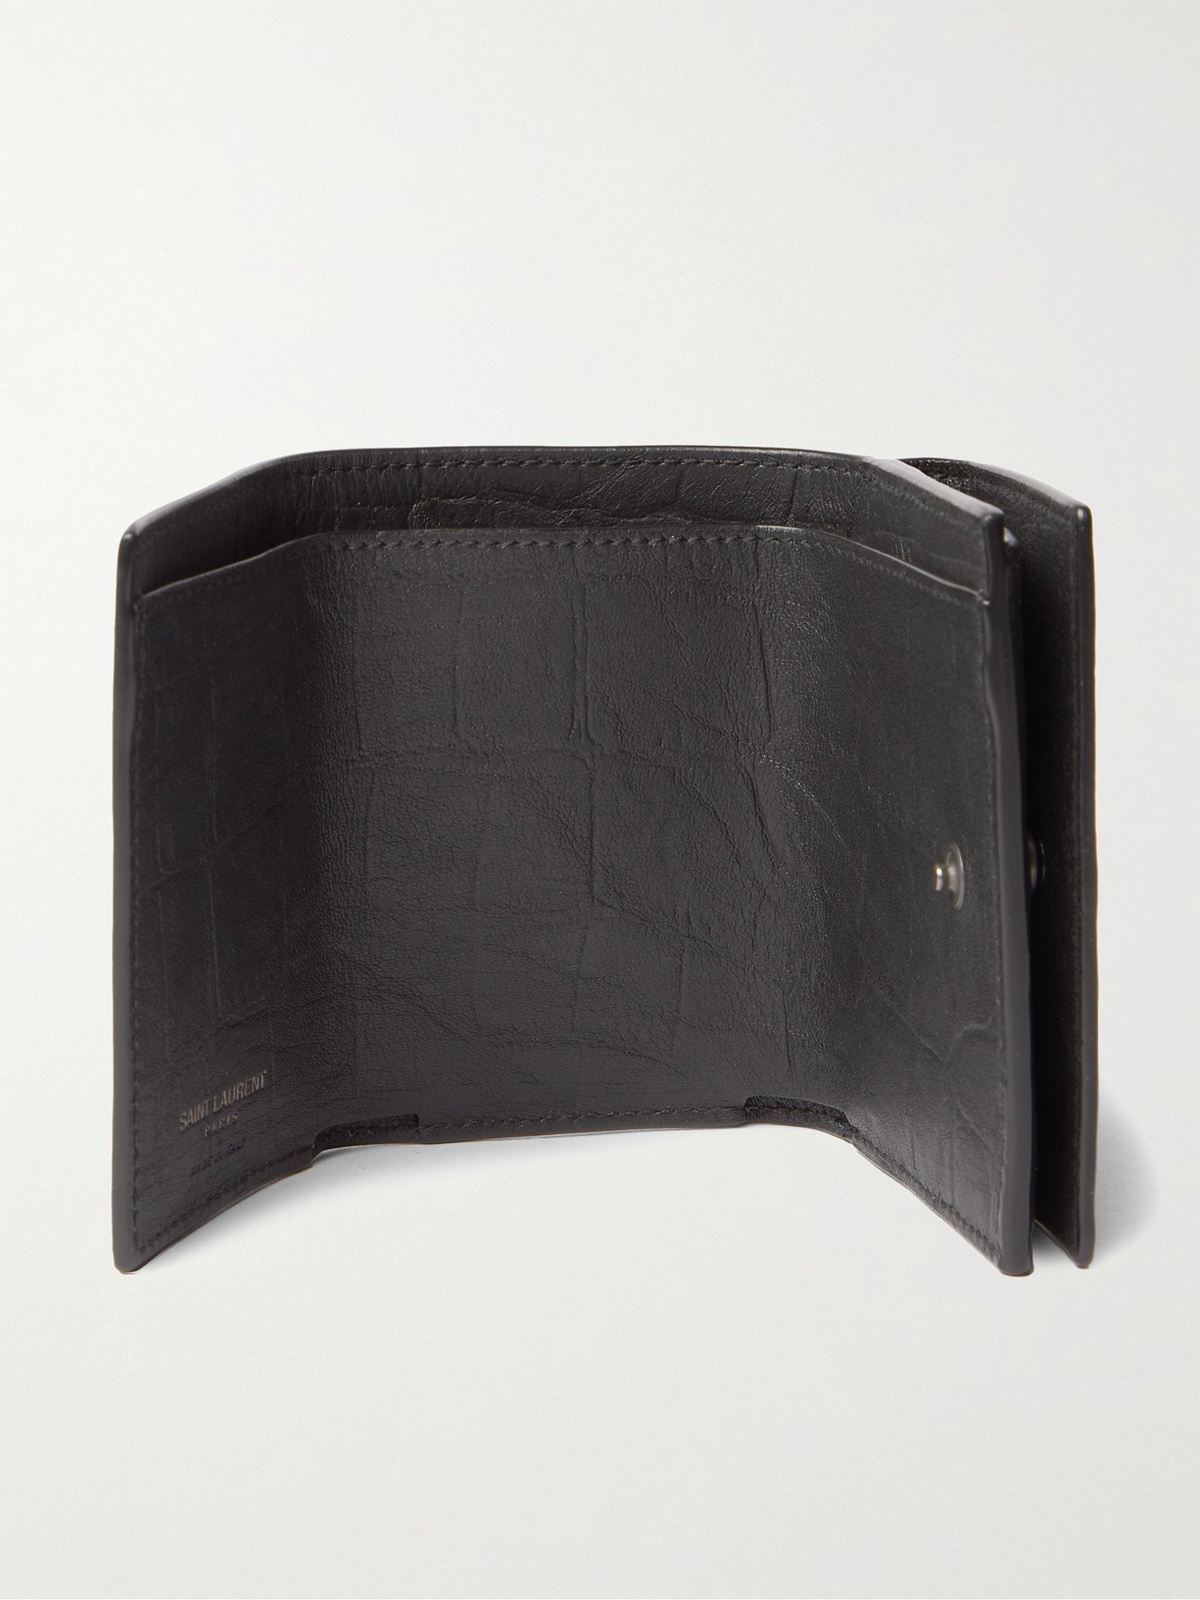 SAINT LAURENT Logo-Appliquéd Croc-Effect Leather Wallet